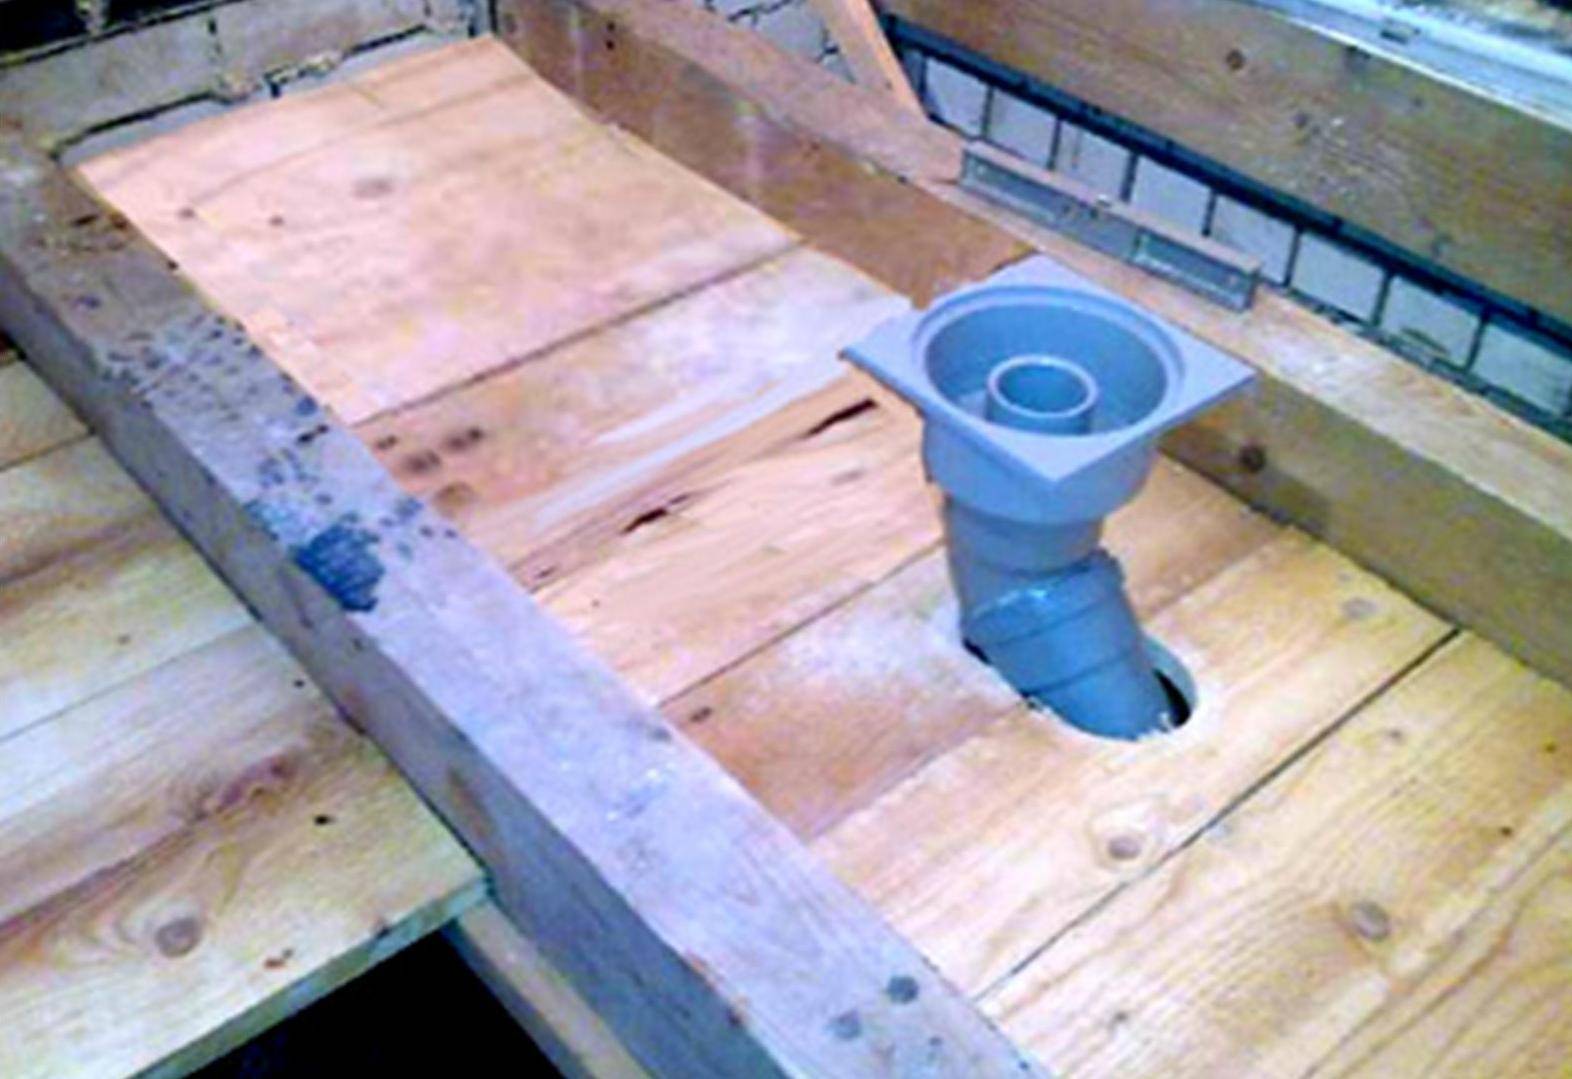 Сухой гидрозатвор для канализации в бане: заводские и самодельные варианты